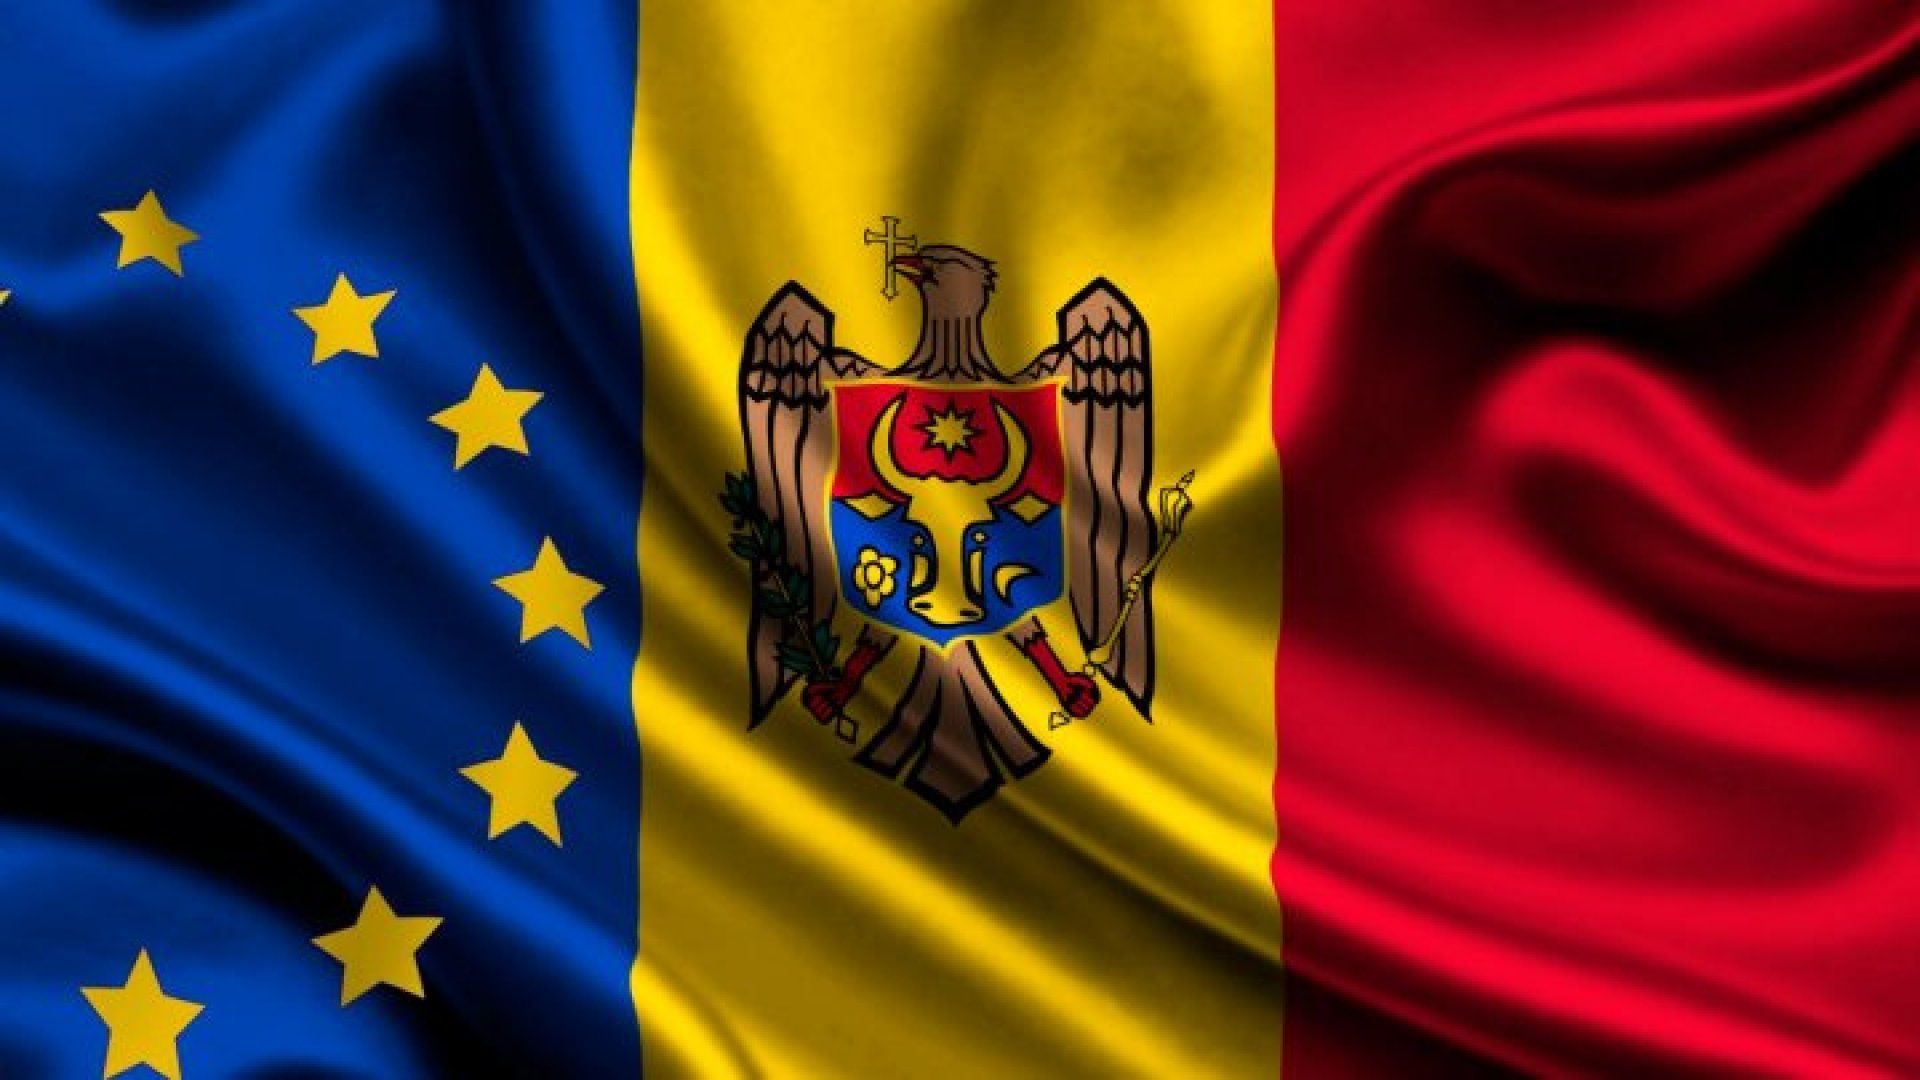 Ожидается, что сегодня Еврокомиссия рекомендует предоставить статус кандидата в члены ЕС для Украины и Республики Молдова